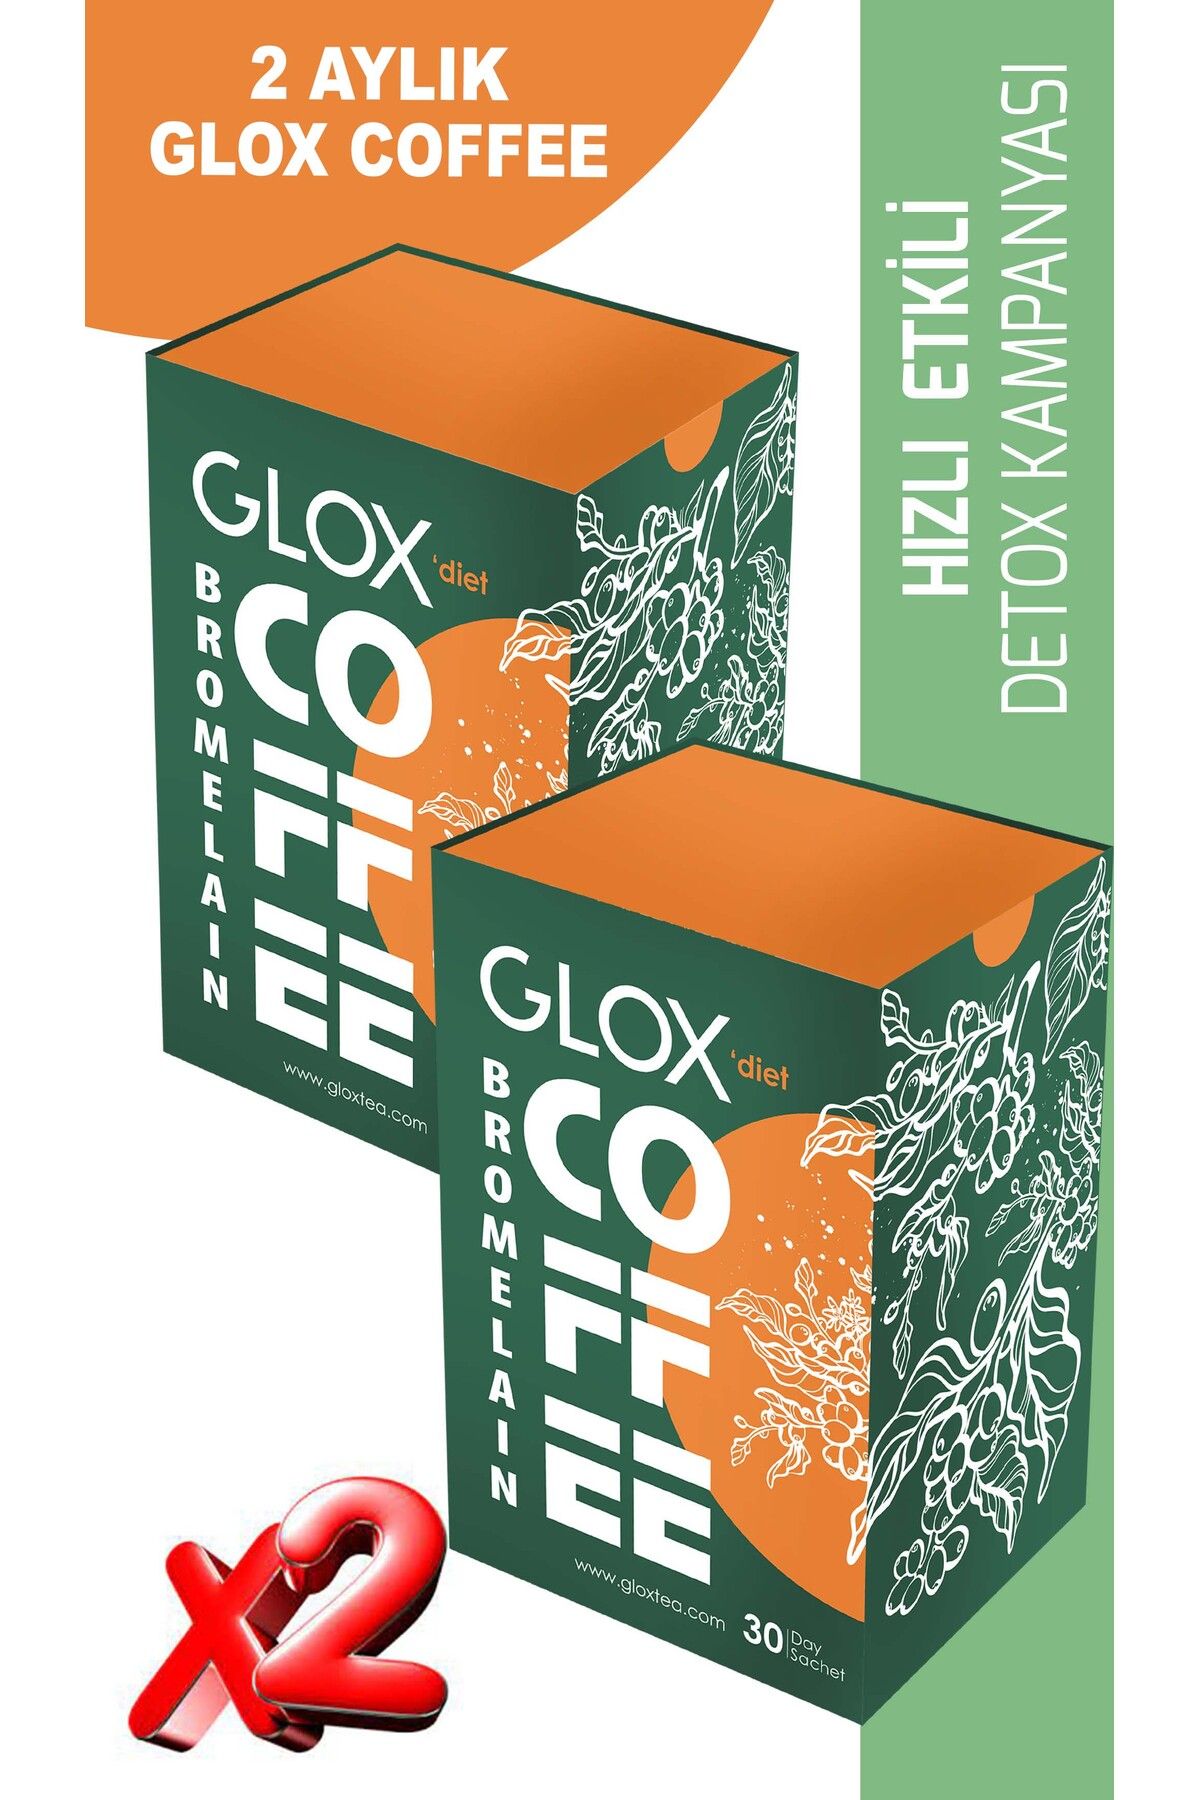 GLOX Bromelain Farkı & Metabolizma Düzenleyen Hızlı Kilo Verdirici Bitkisel Detox Kahve 60 Adet